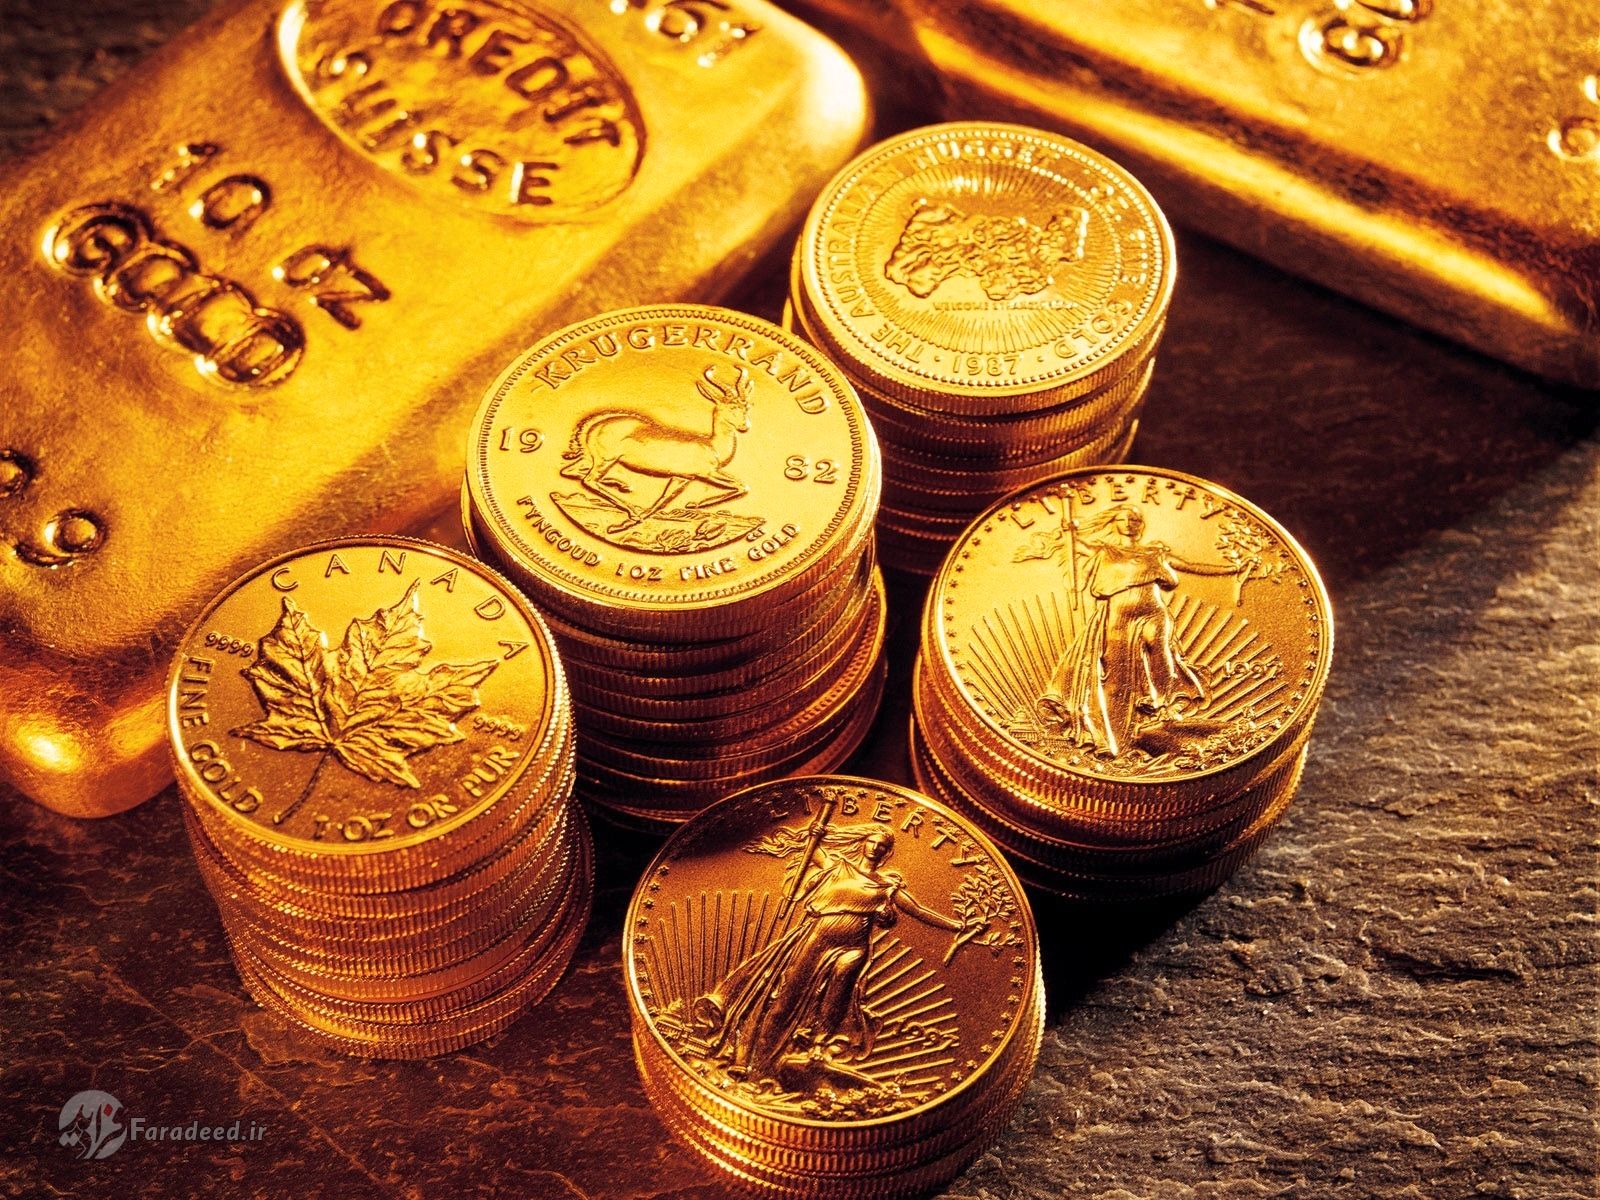 قیمت سکه و طلای ۱۸ عیار در بازار امروز دوشنبه ۱۹ آبان ۹۹